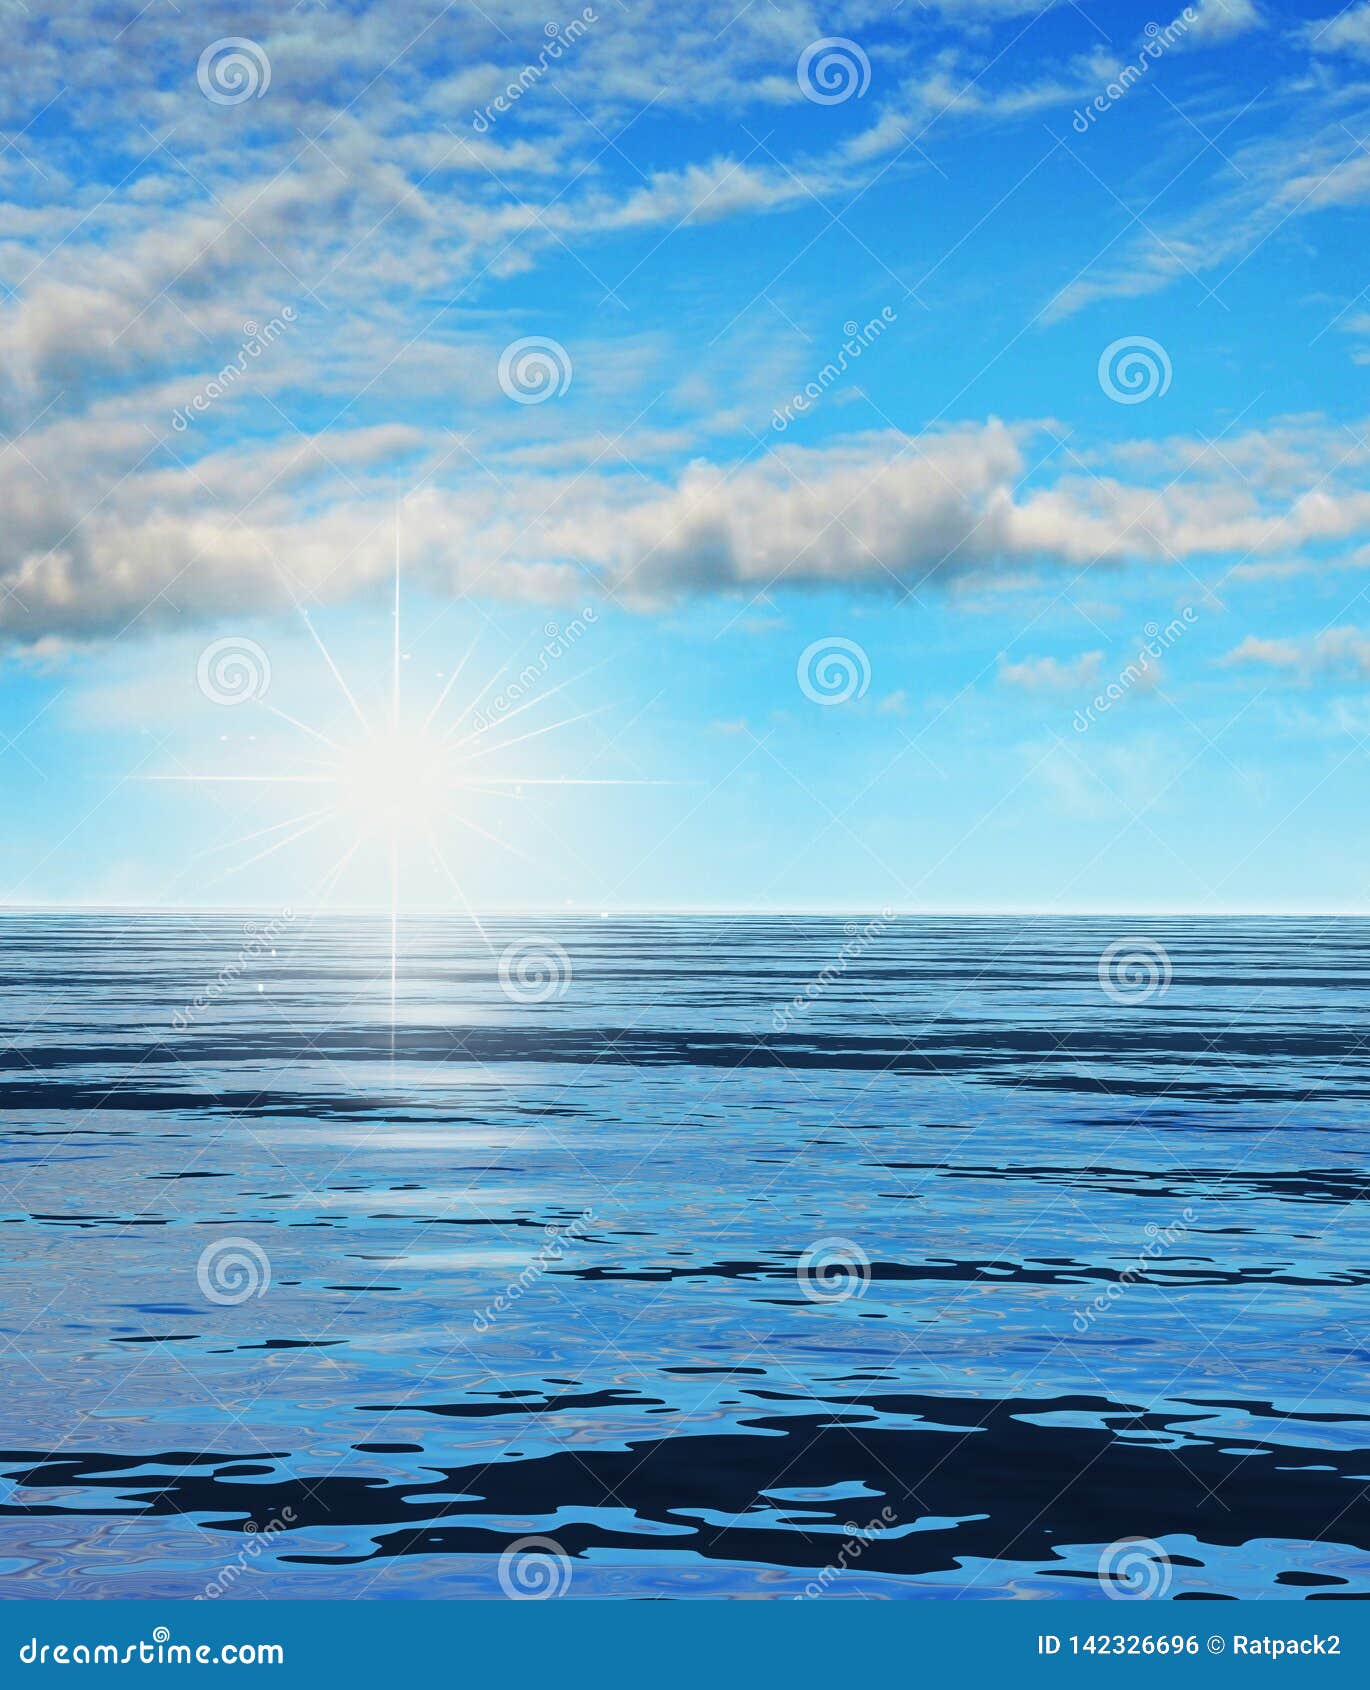 Soleil Levant Au Dessus D Un Paysage D Ocean Photo Stock Image Du Ciel Lumiere